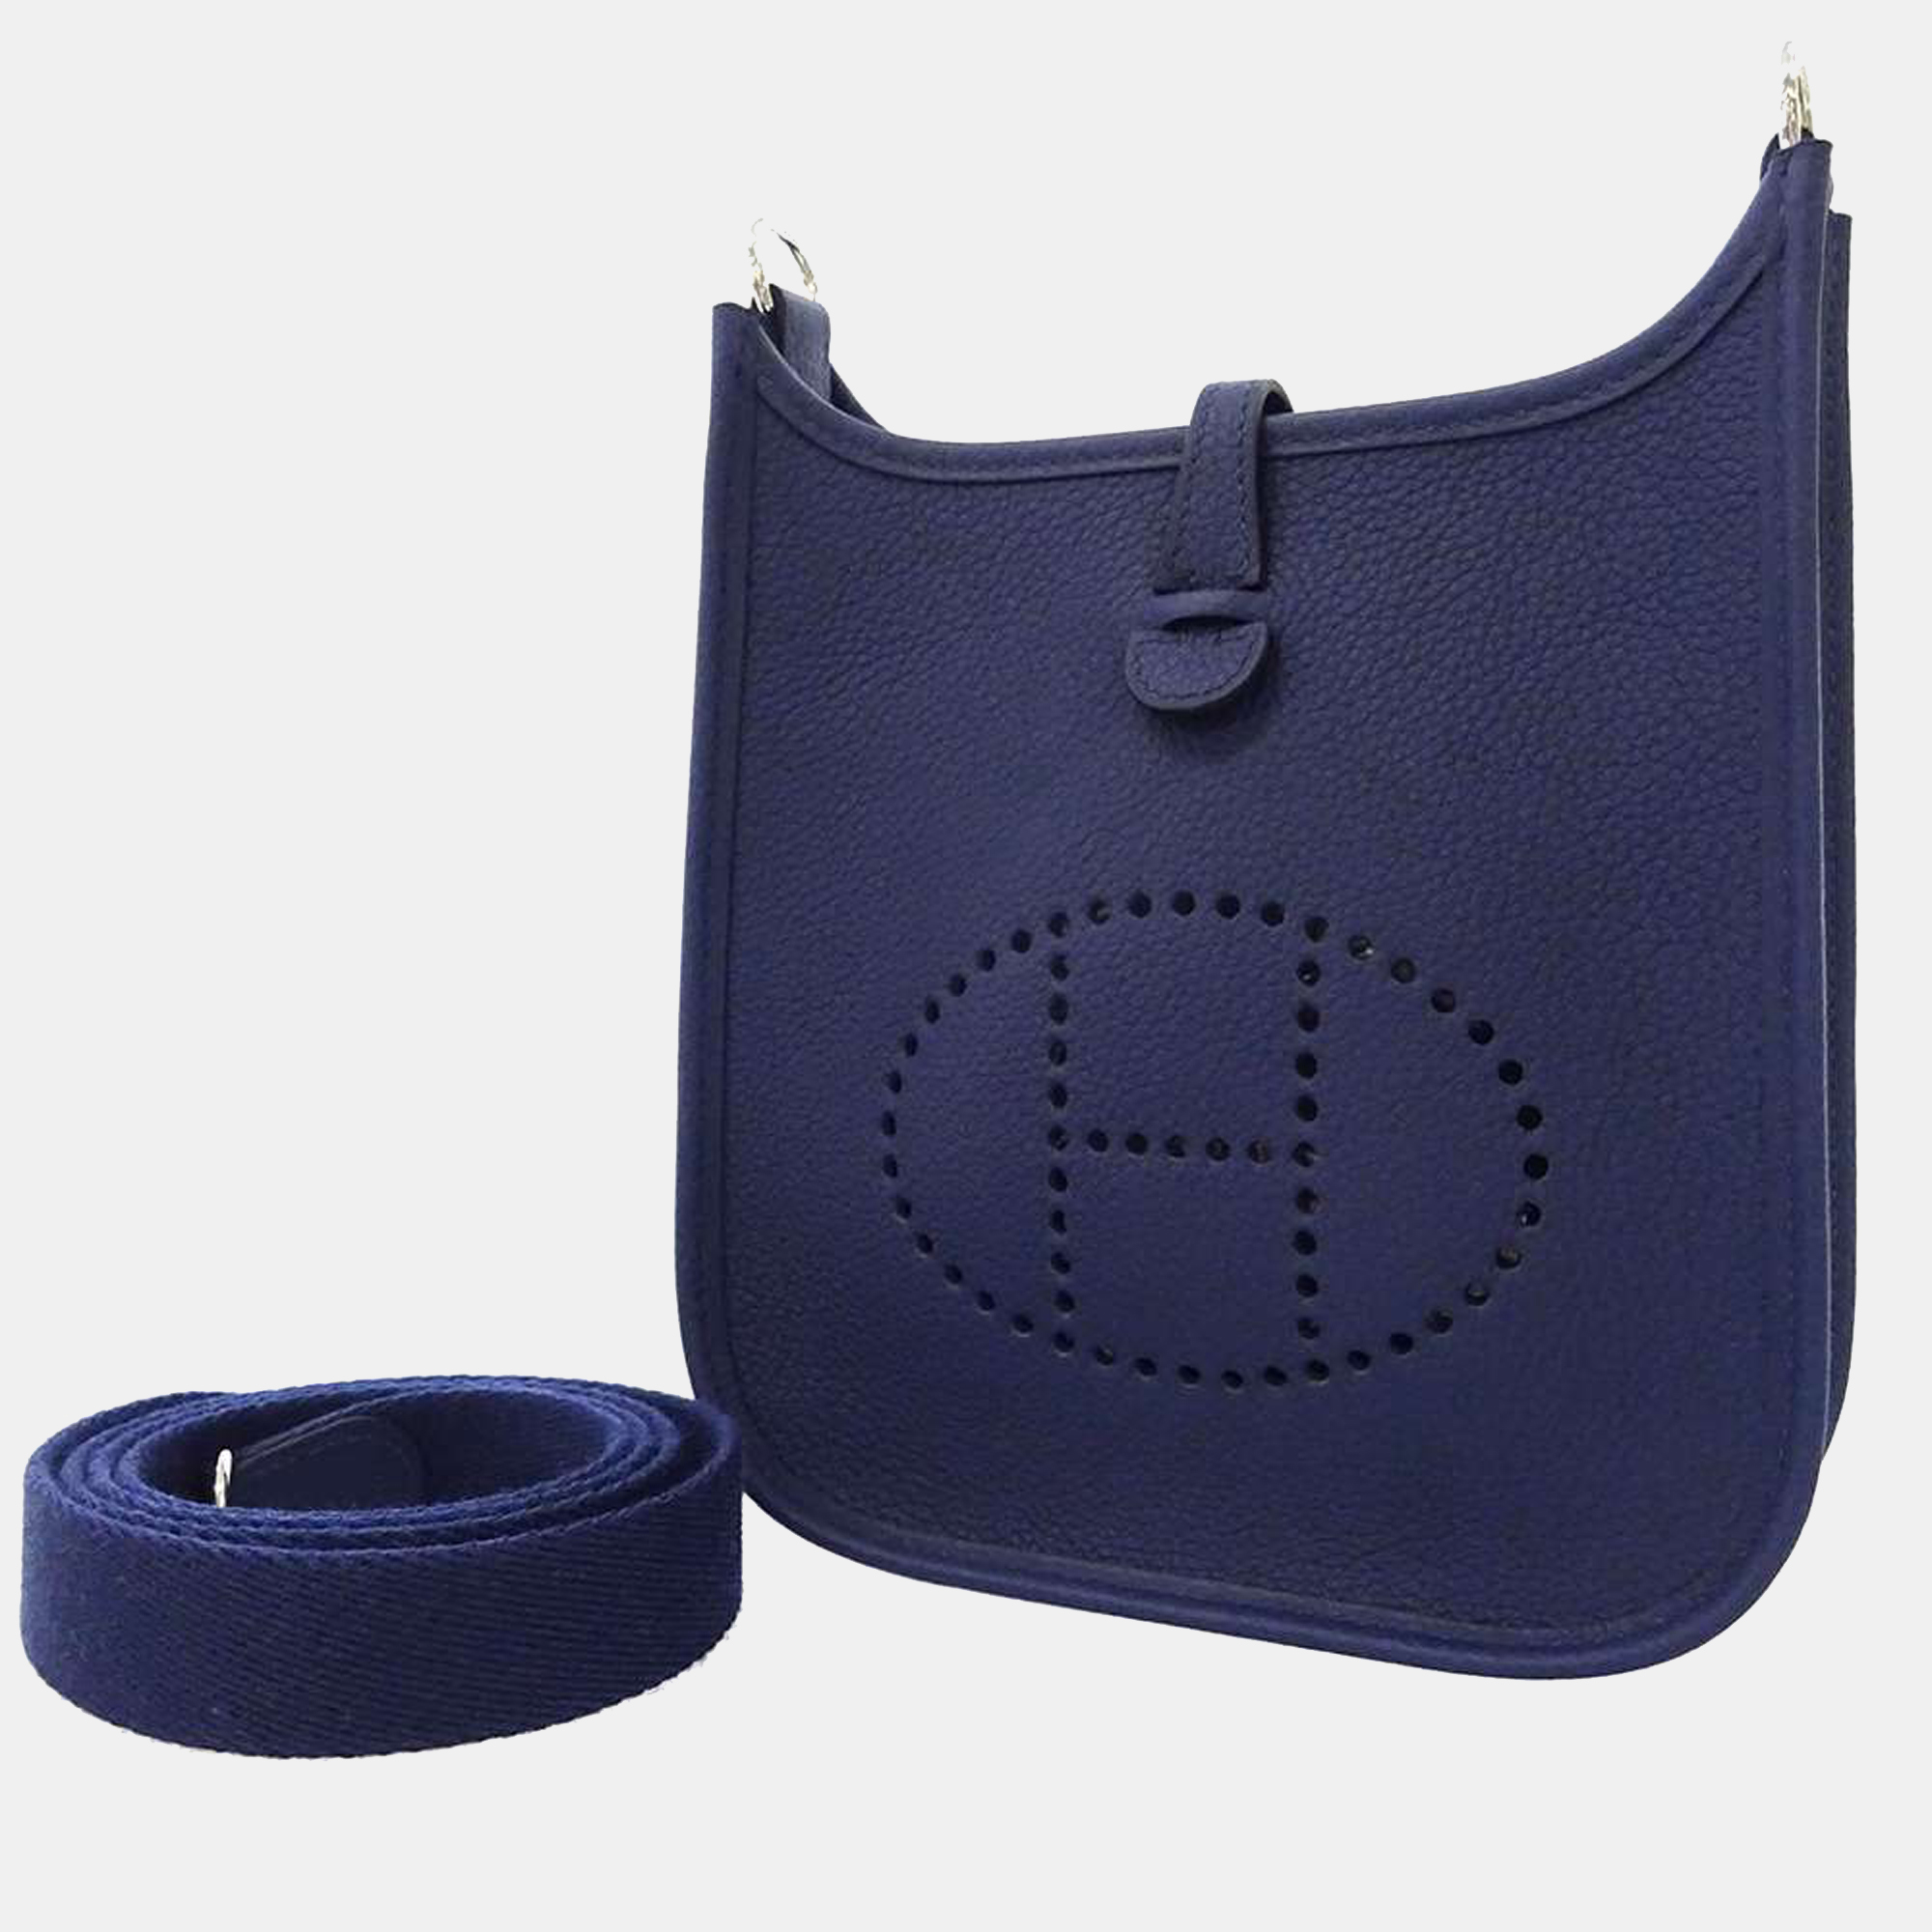 Hermes Blue Taurillon Maurice Leather Evelyne TPM Shoulder Bag